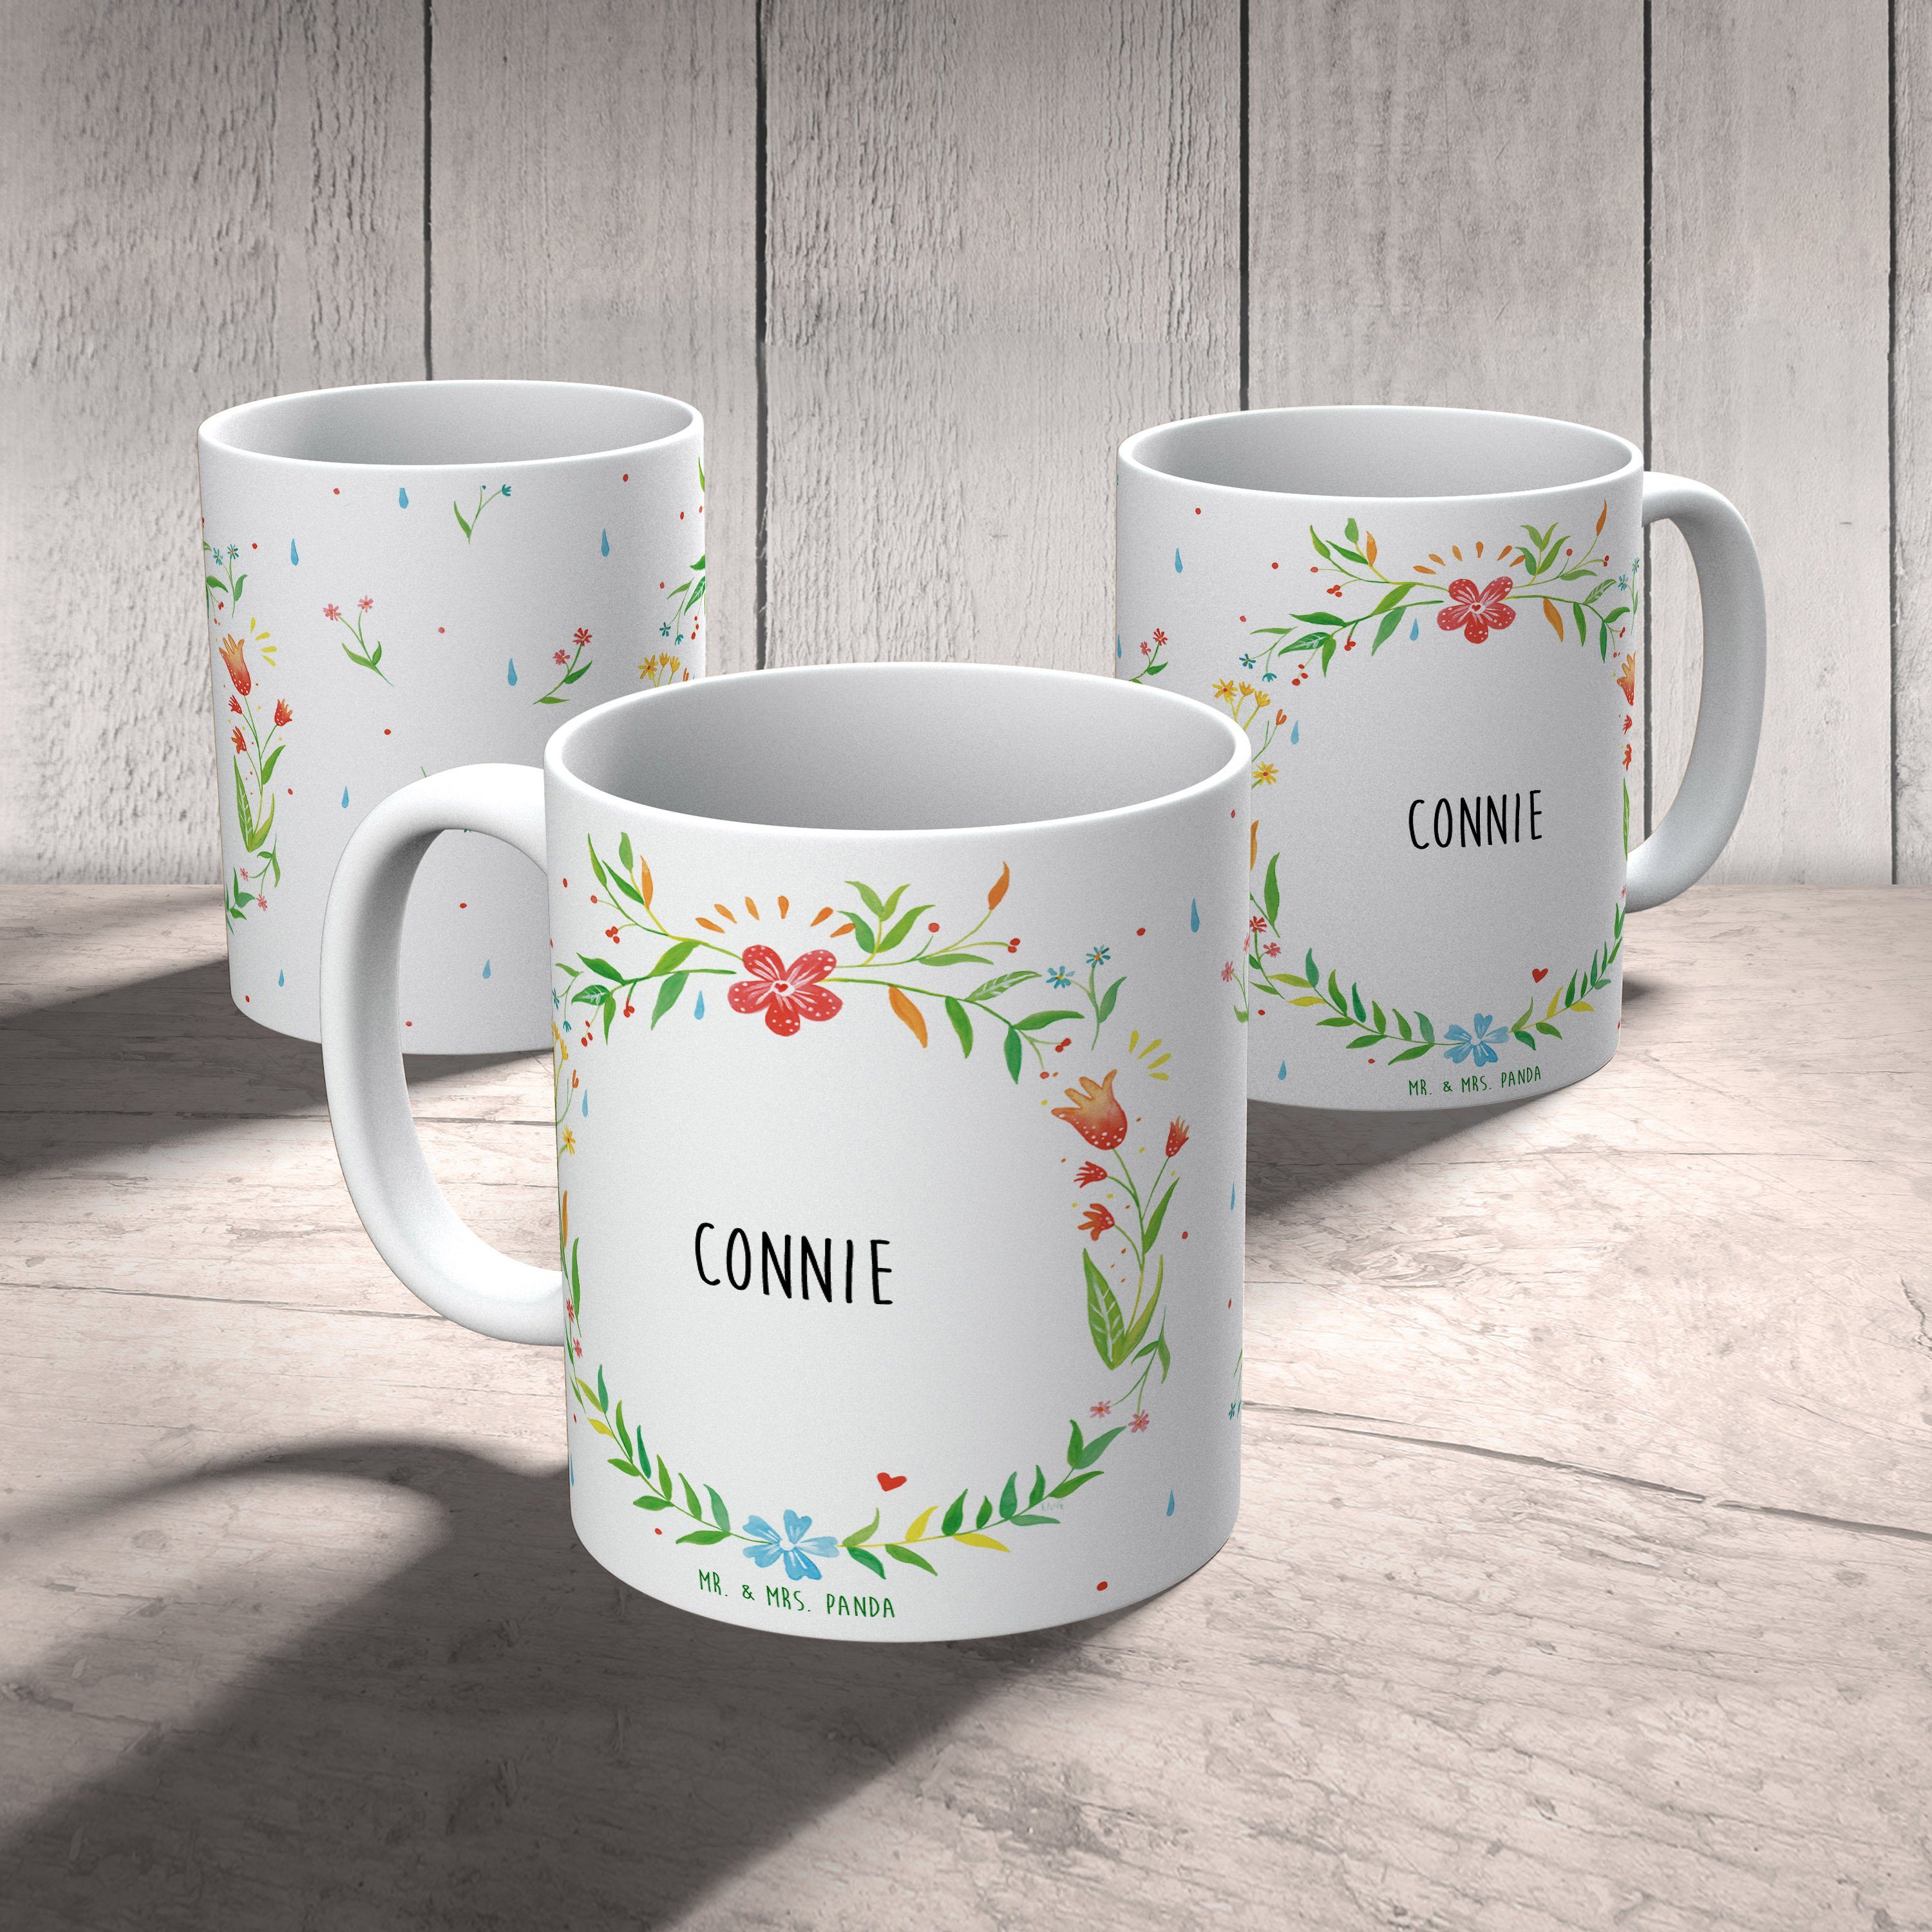 Mrs. - Panda Tasse Keramik Kaffeebeche, & Kaffeetasse, Mr. Connie Geschenk, Sprüche, Tasse Teebecher,